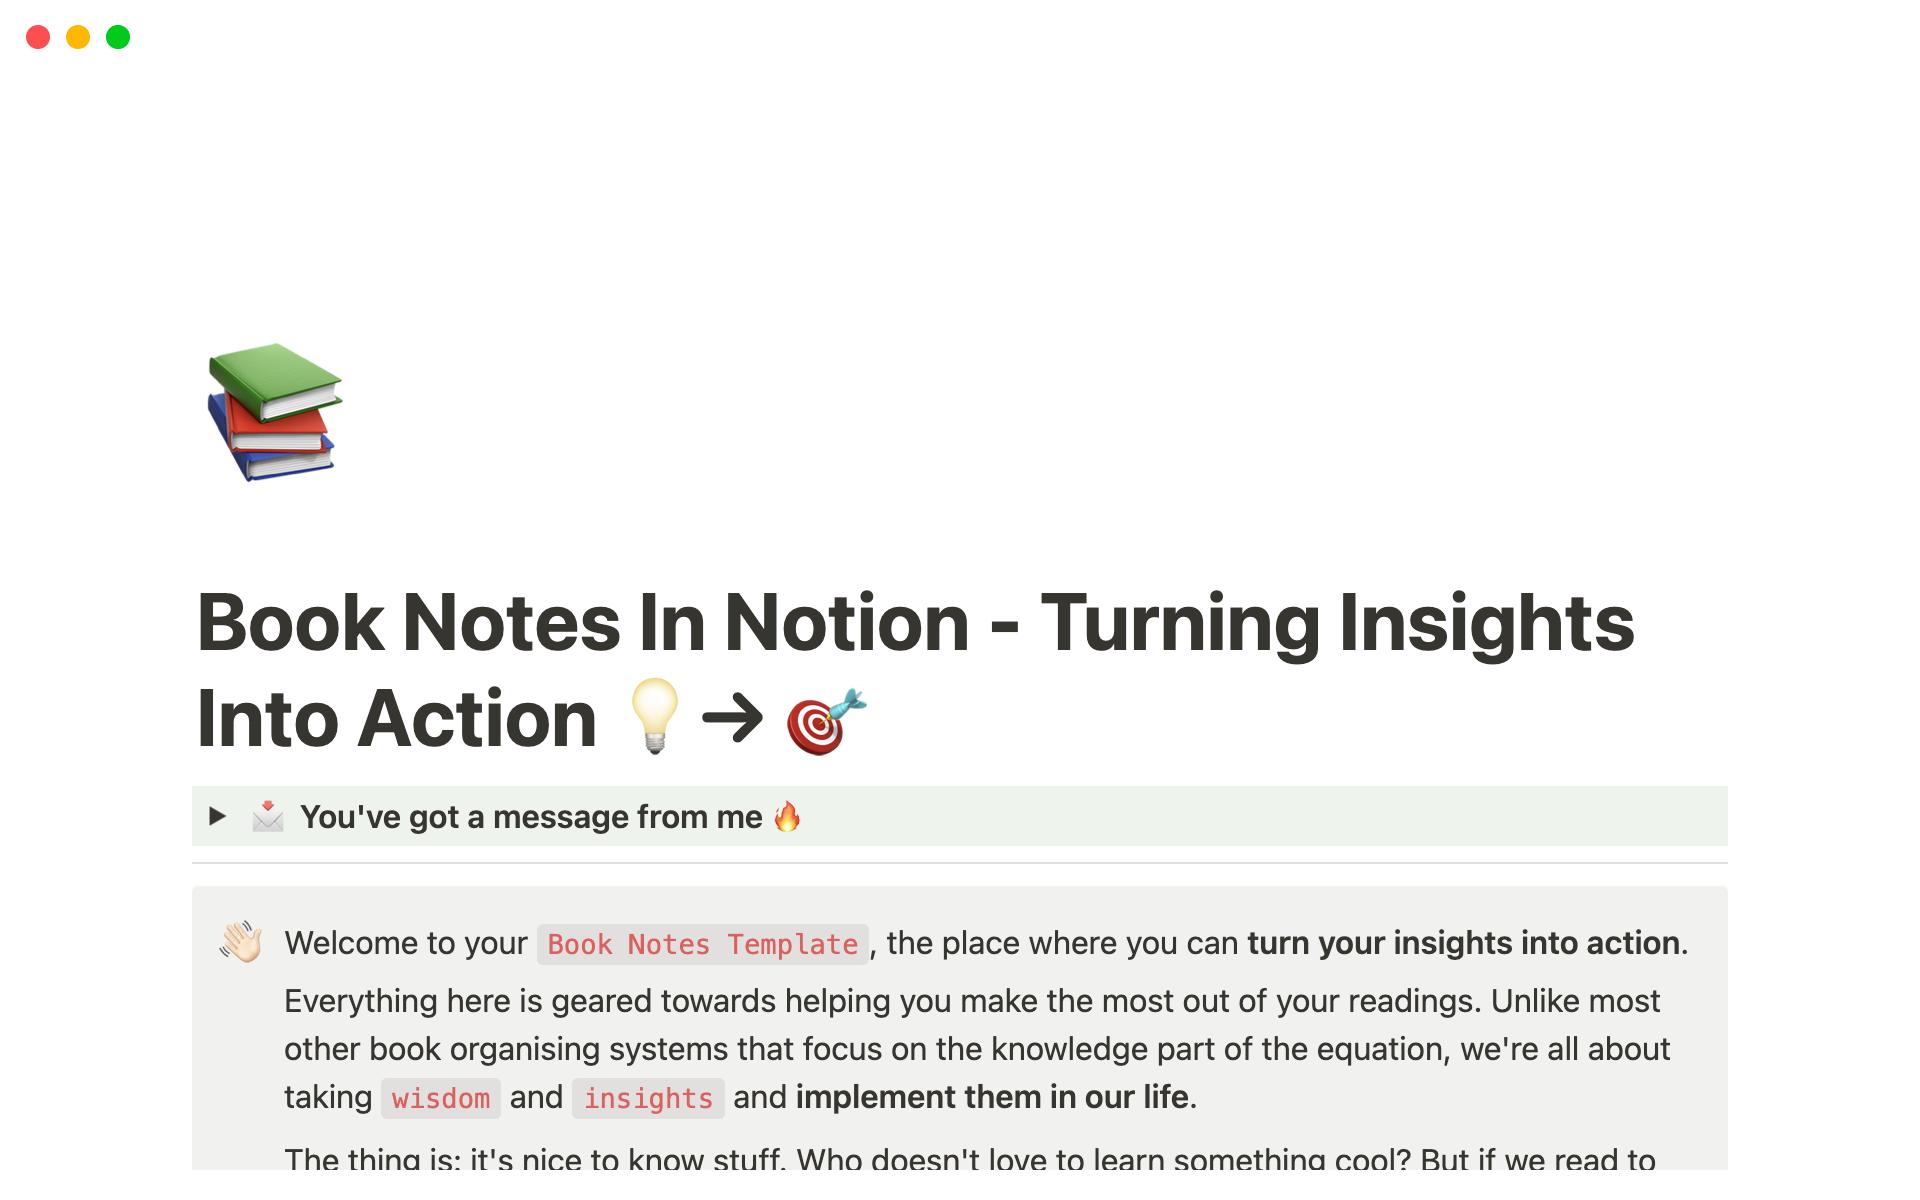 Vista previa de una plantilla para Book Notes for Notion